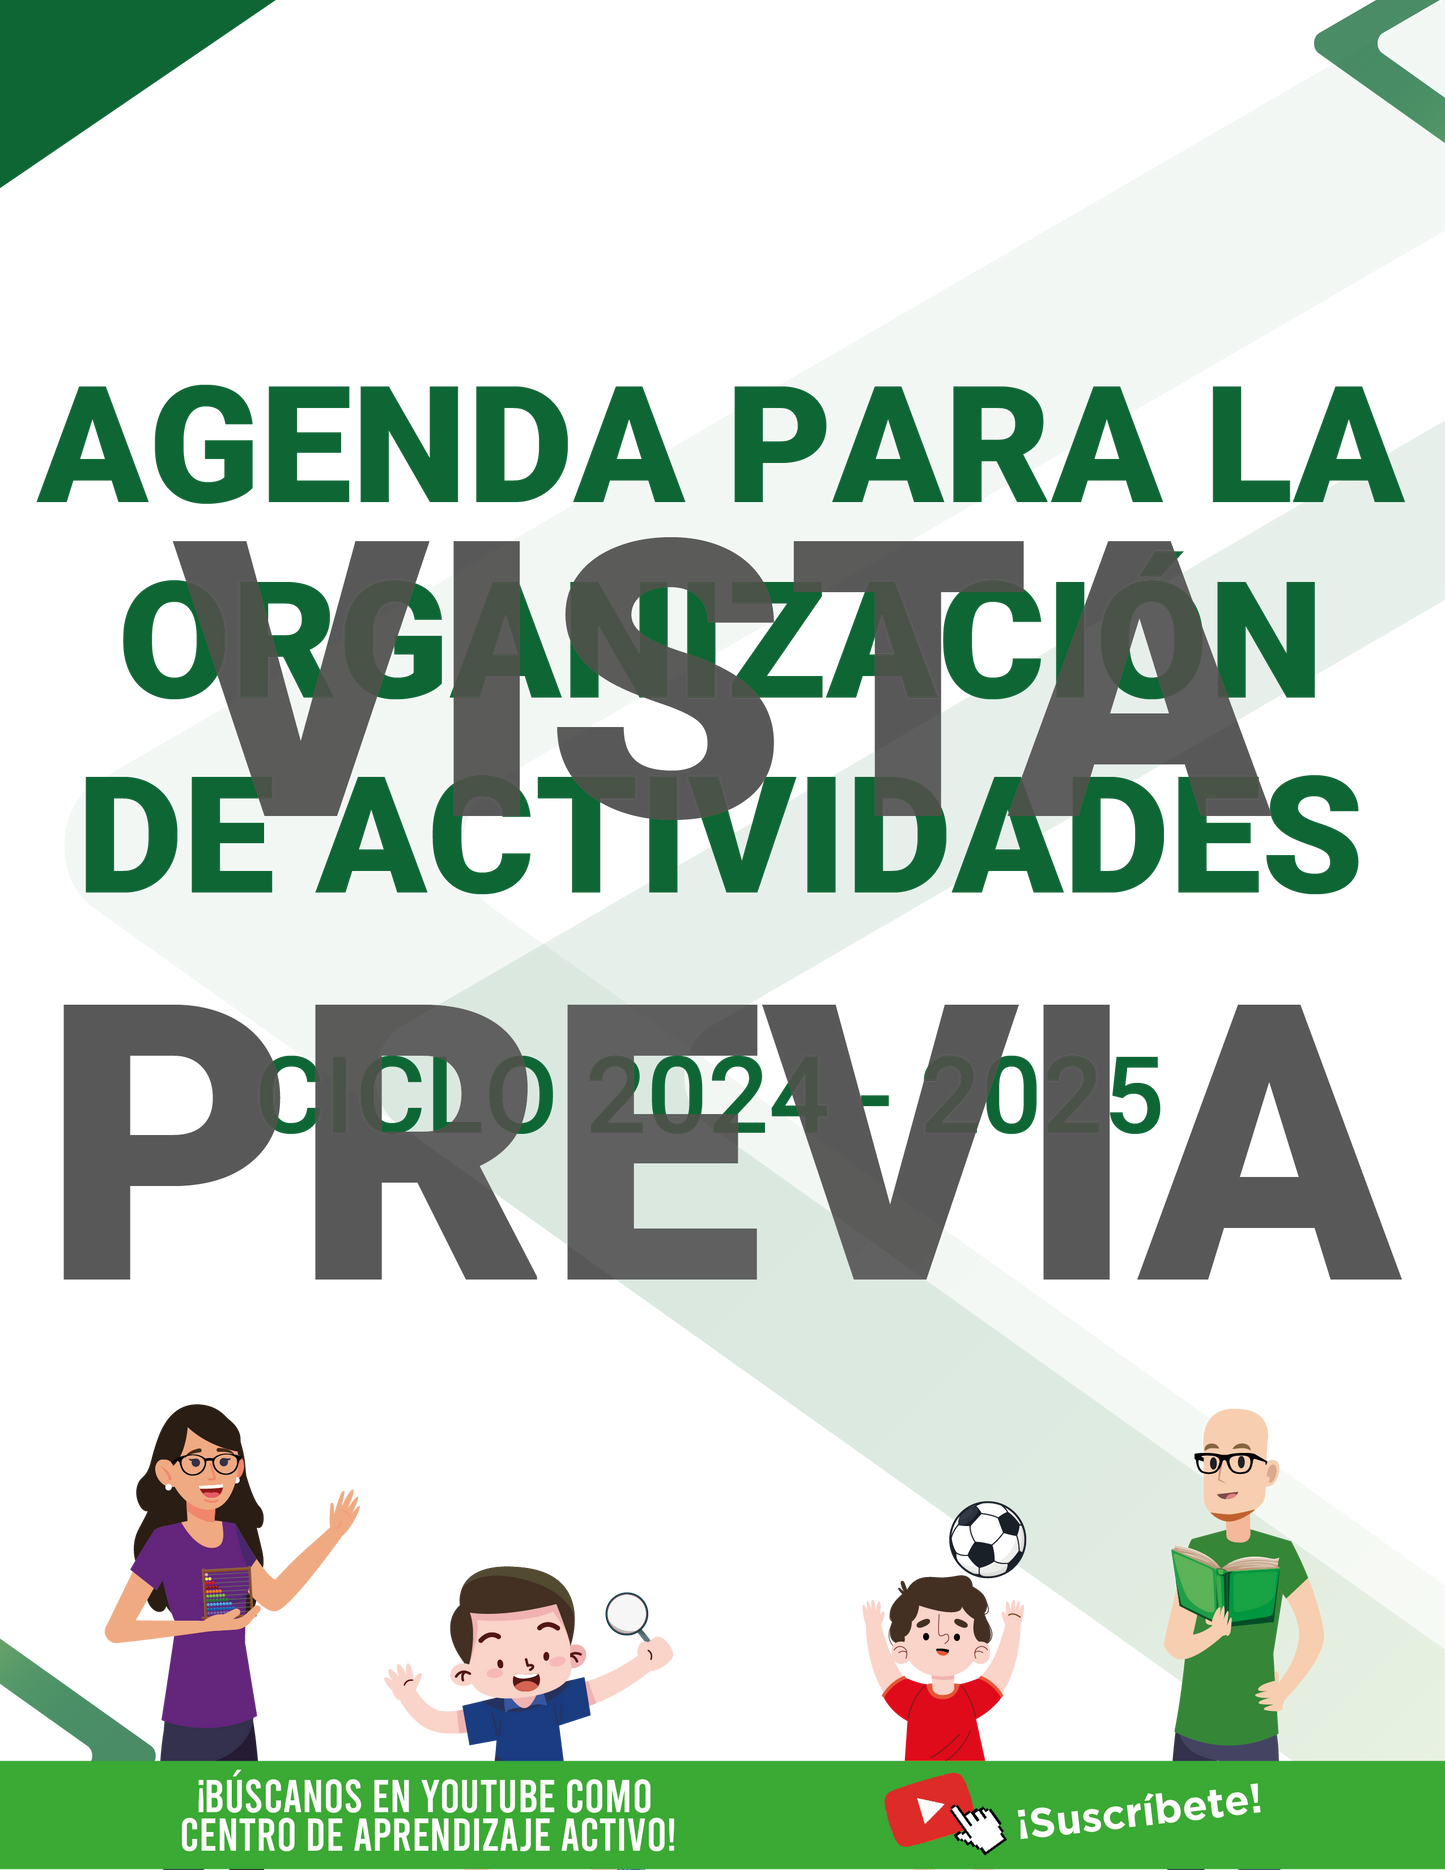 Mi Agenda Formal DIRECTOR Preescolar Ciclo Escolar 2024 - 2025 en PDF